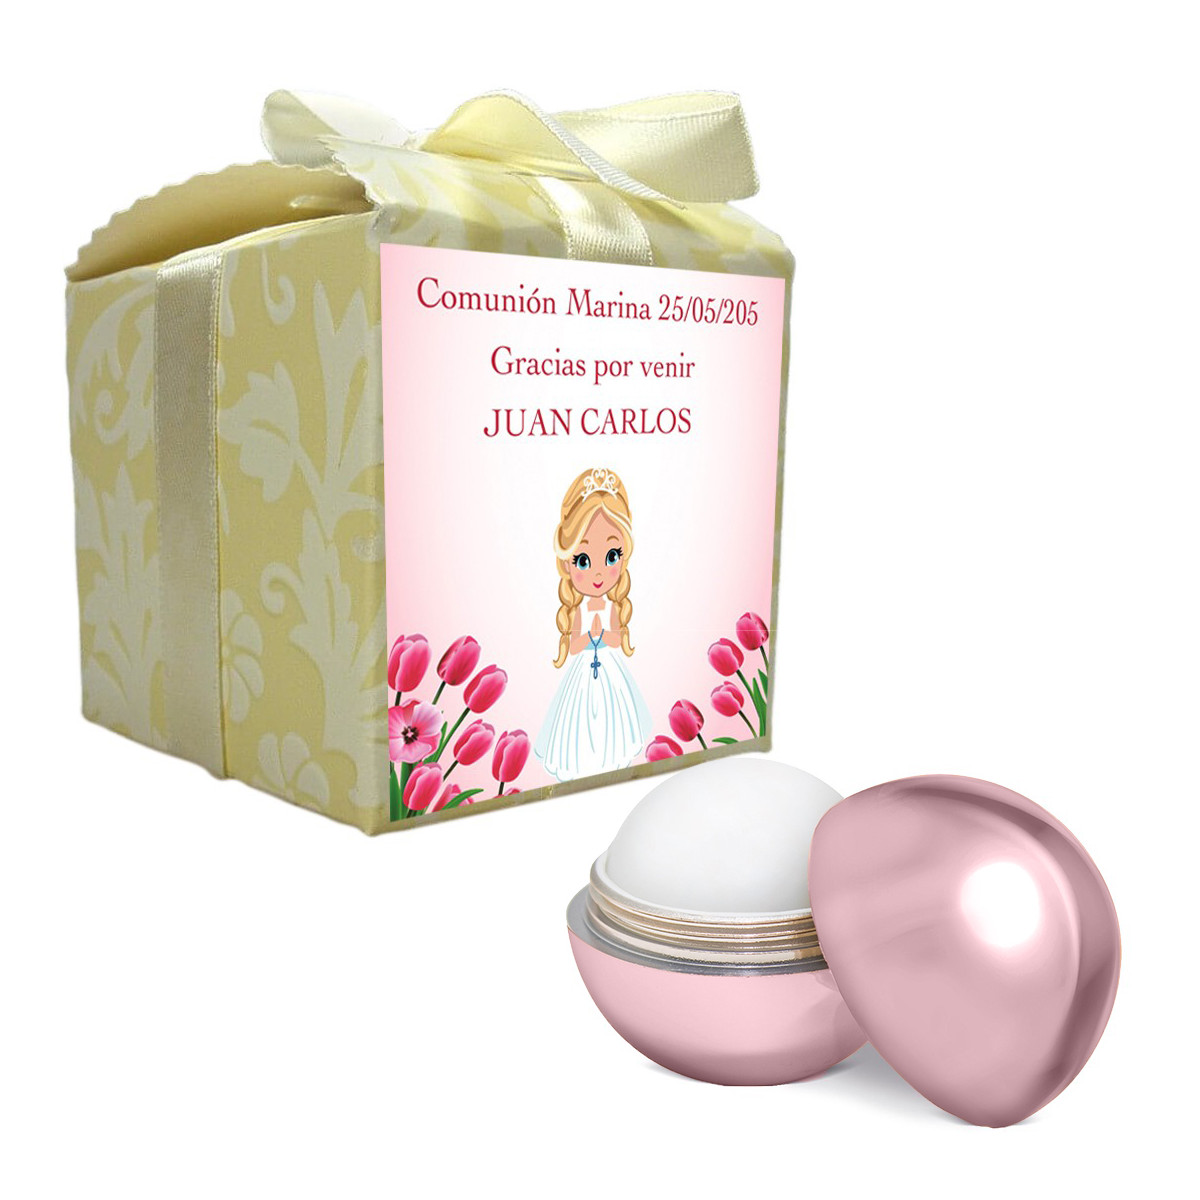 Bálsamo labial rosa apresentado em caixa com autocolante de comunhão personalizado com o nome do convidado